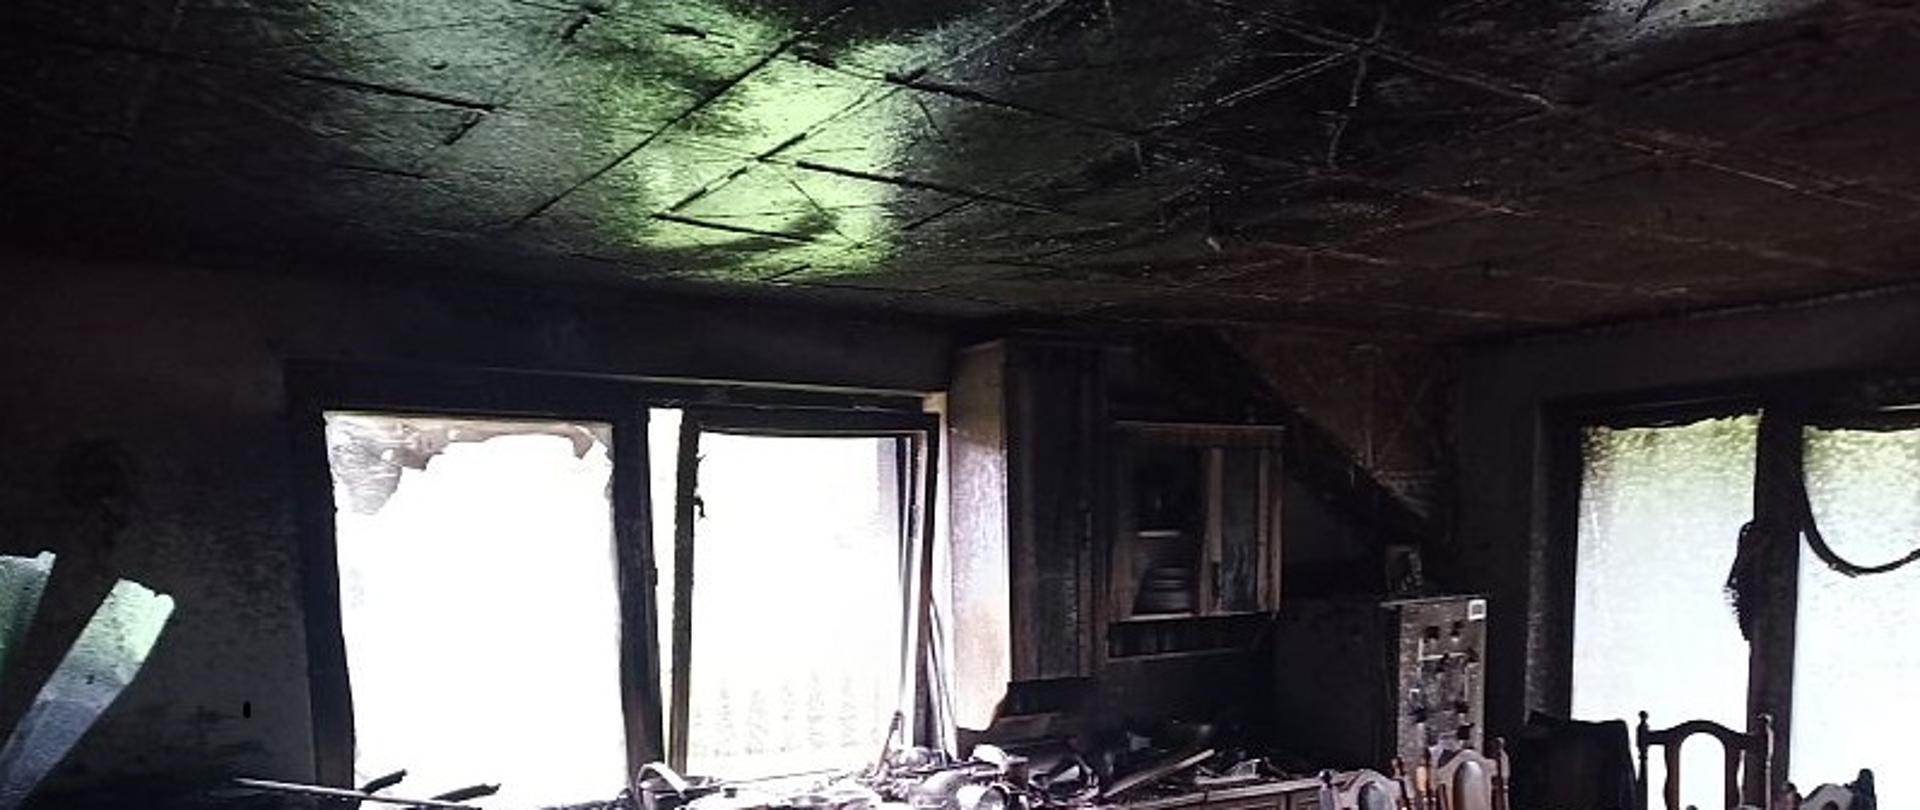 Na zdjęciu widać jedno z pomieszczeń (kuchnię) zaraz po pożarze